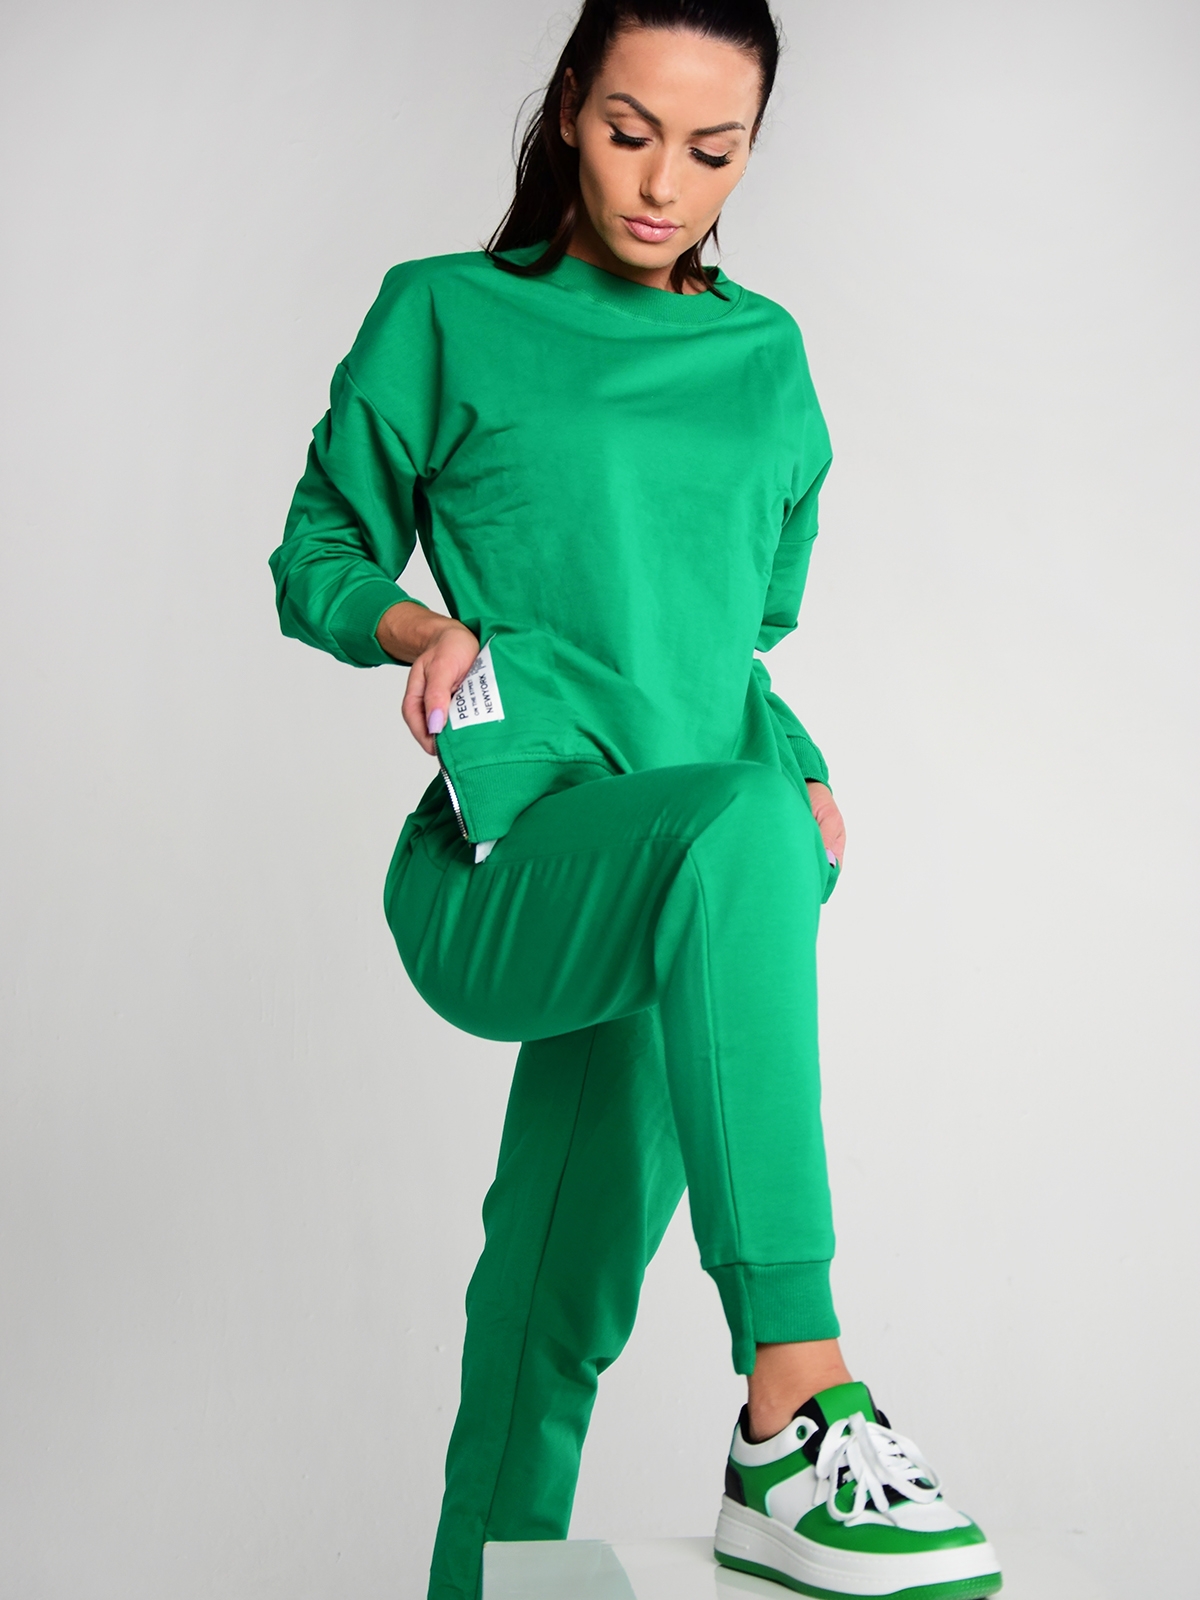 Stilingas žalios spalvos moteriškas laisvalaikio kostiumėlis